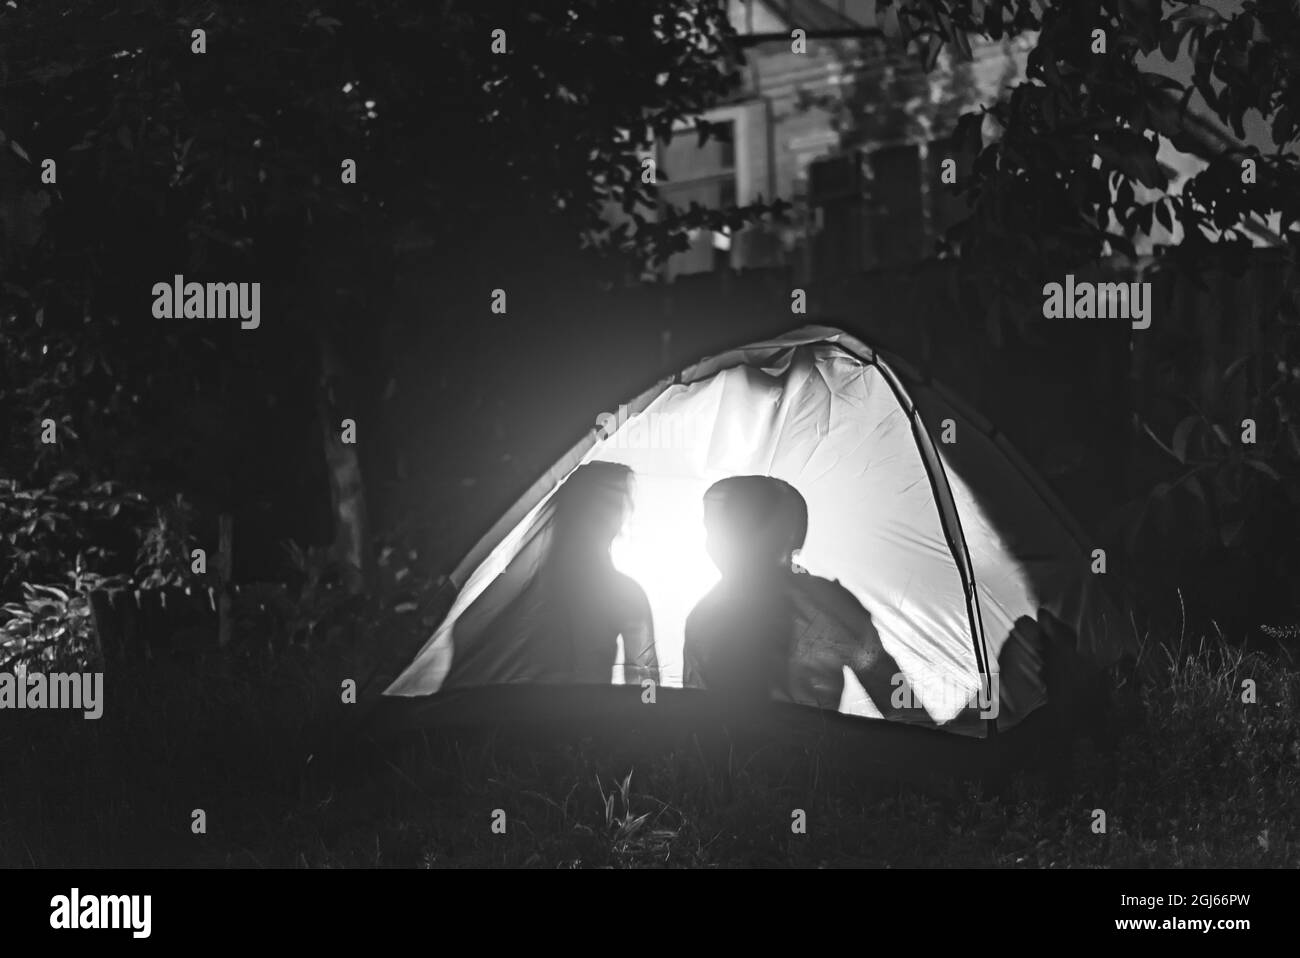 Persone nella tenda di notte. Foto in bianco e nero Foto Stock